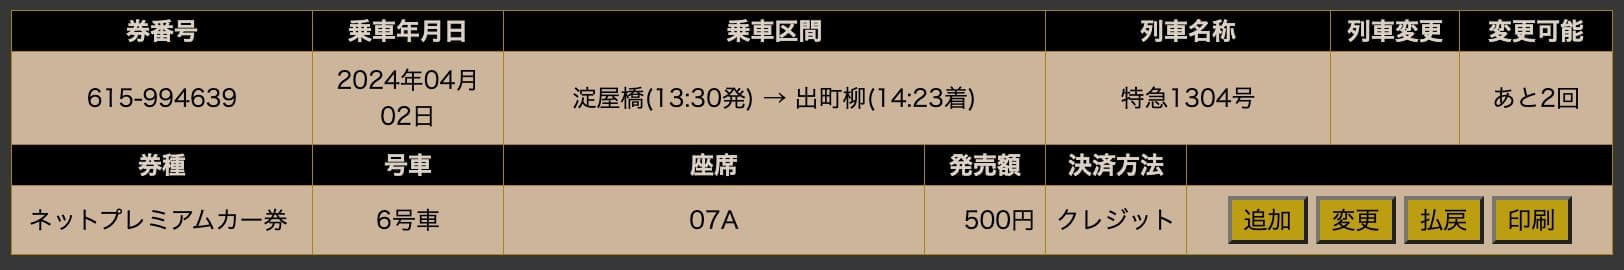 京阪電車のプレミアムカーの予約変更